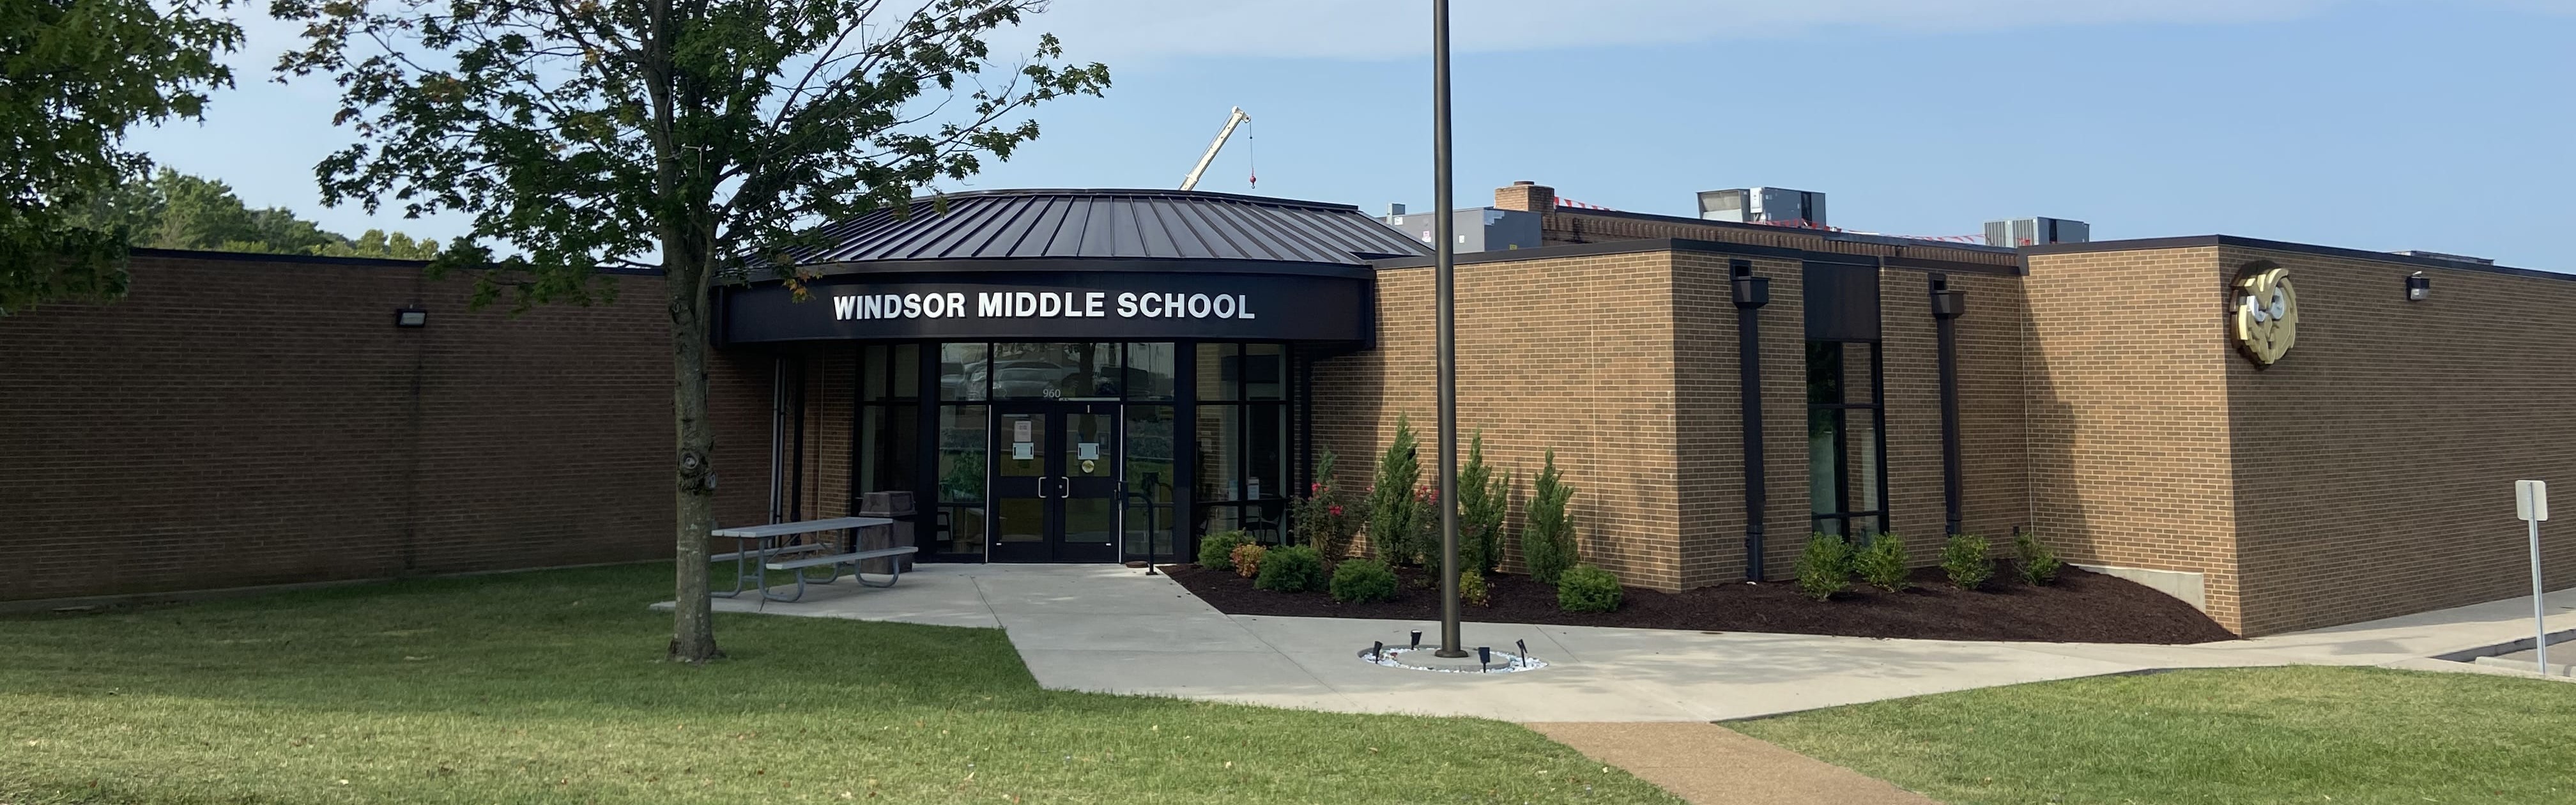 Windsor Middle School Front Entrance